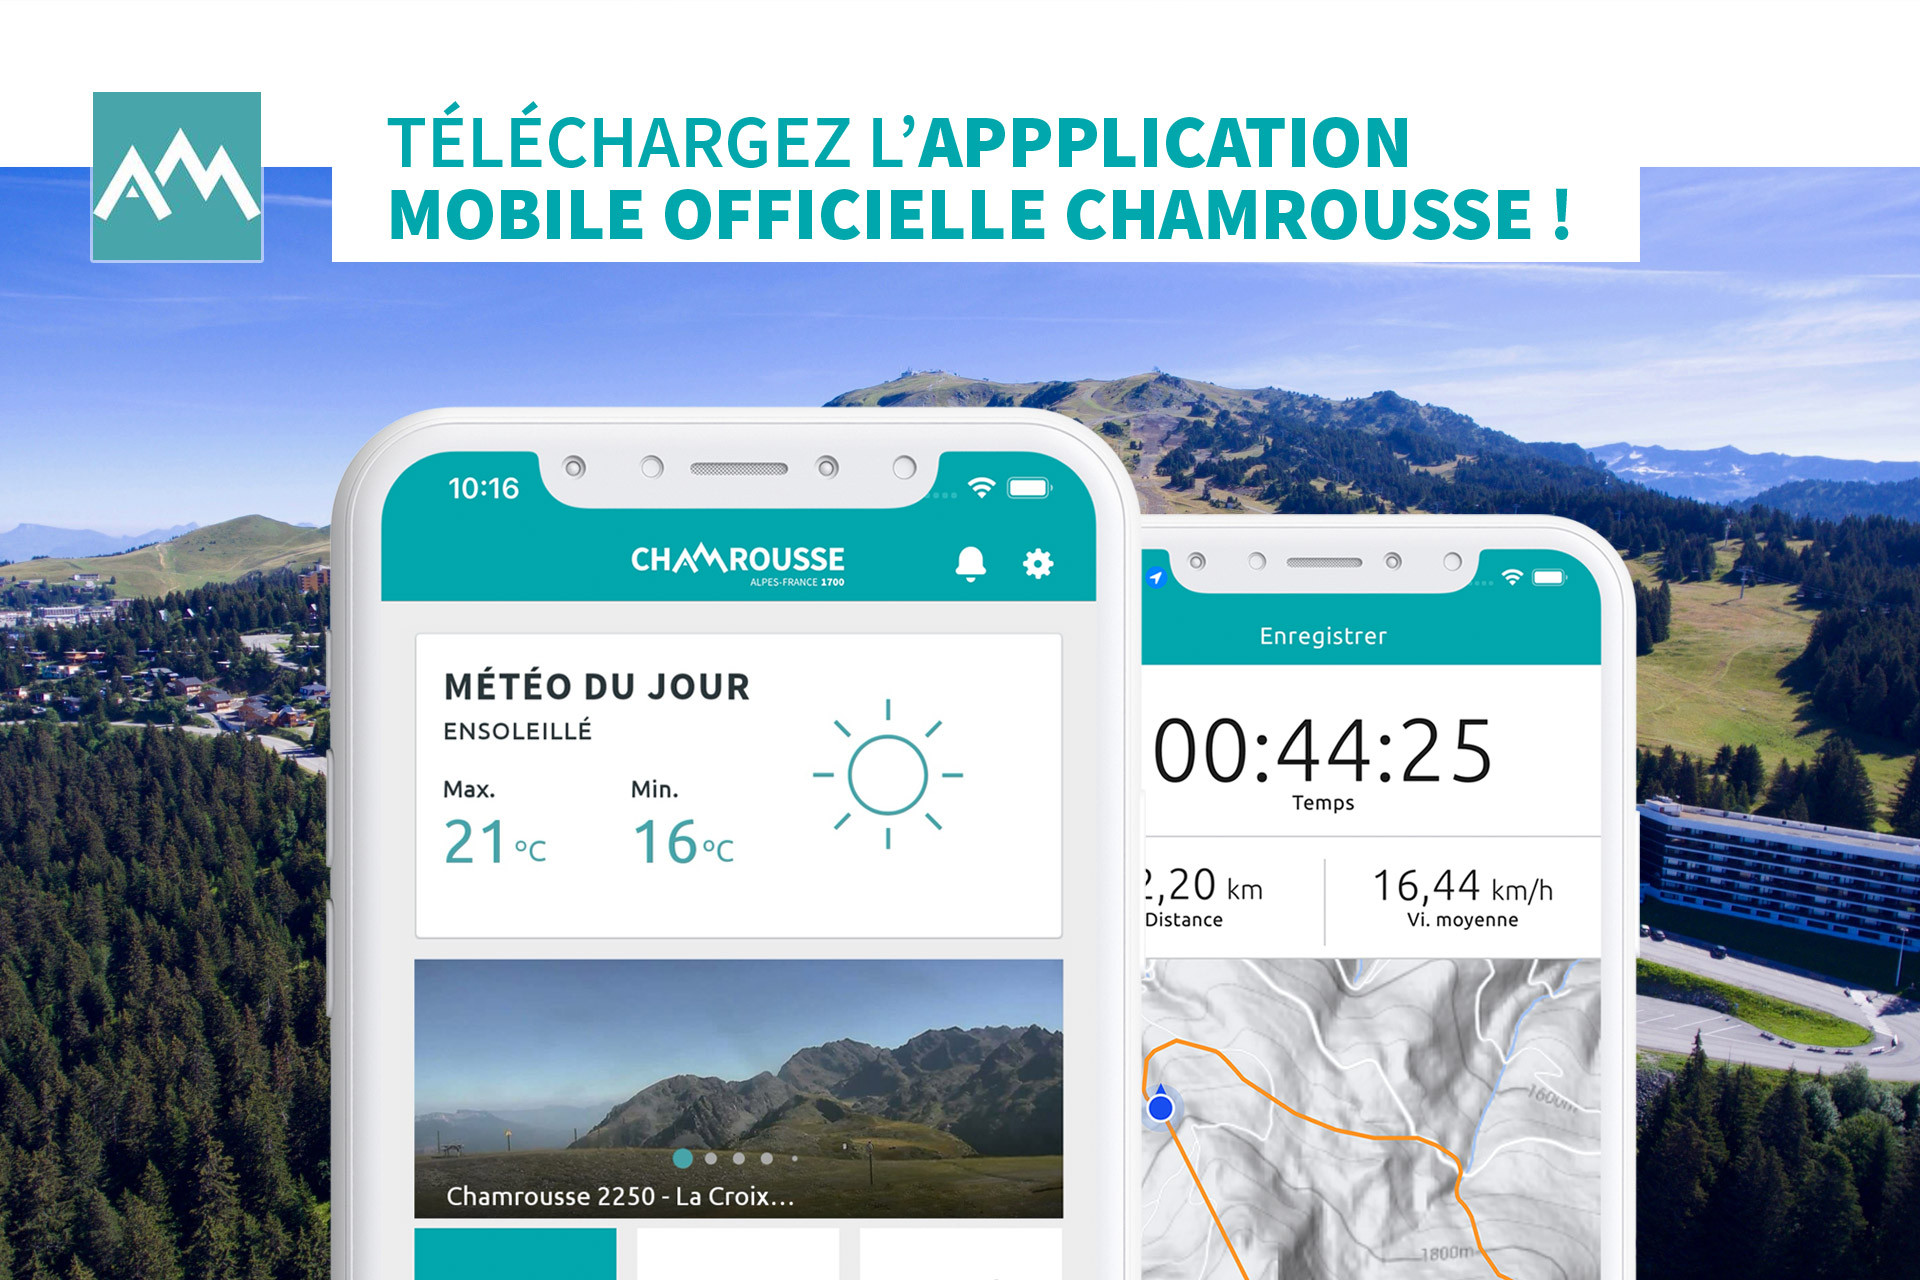 Chamrousse application mobile officielle station été montagne grenoble isère alpes france